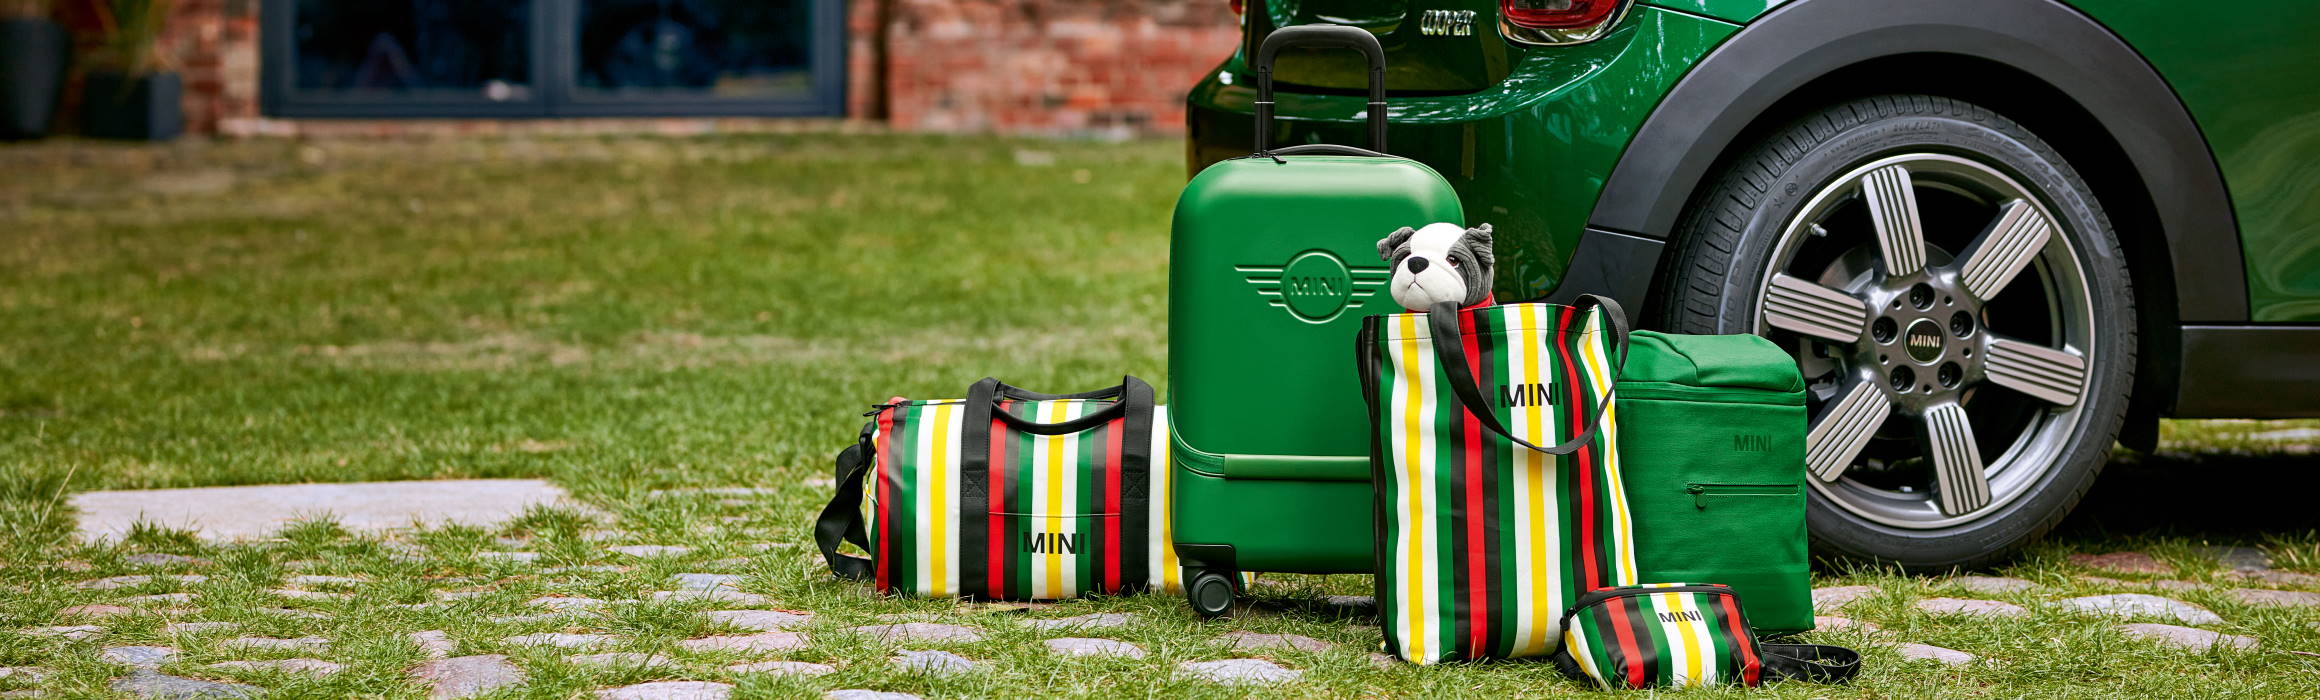 Koffer und Taschen im MINI-Design vor grünem MINI-Modell